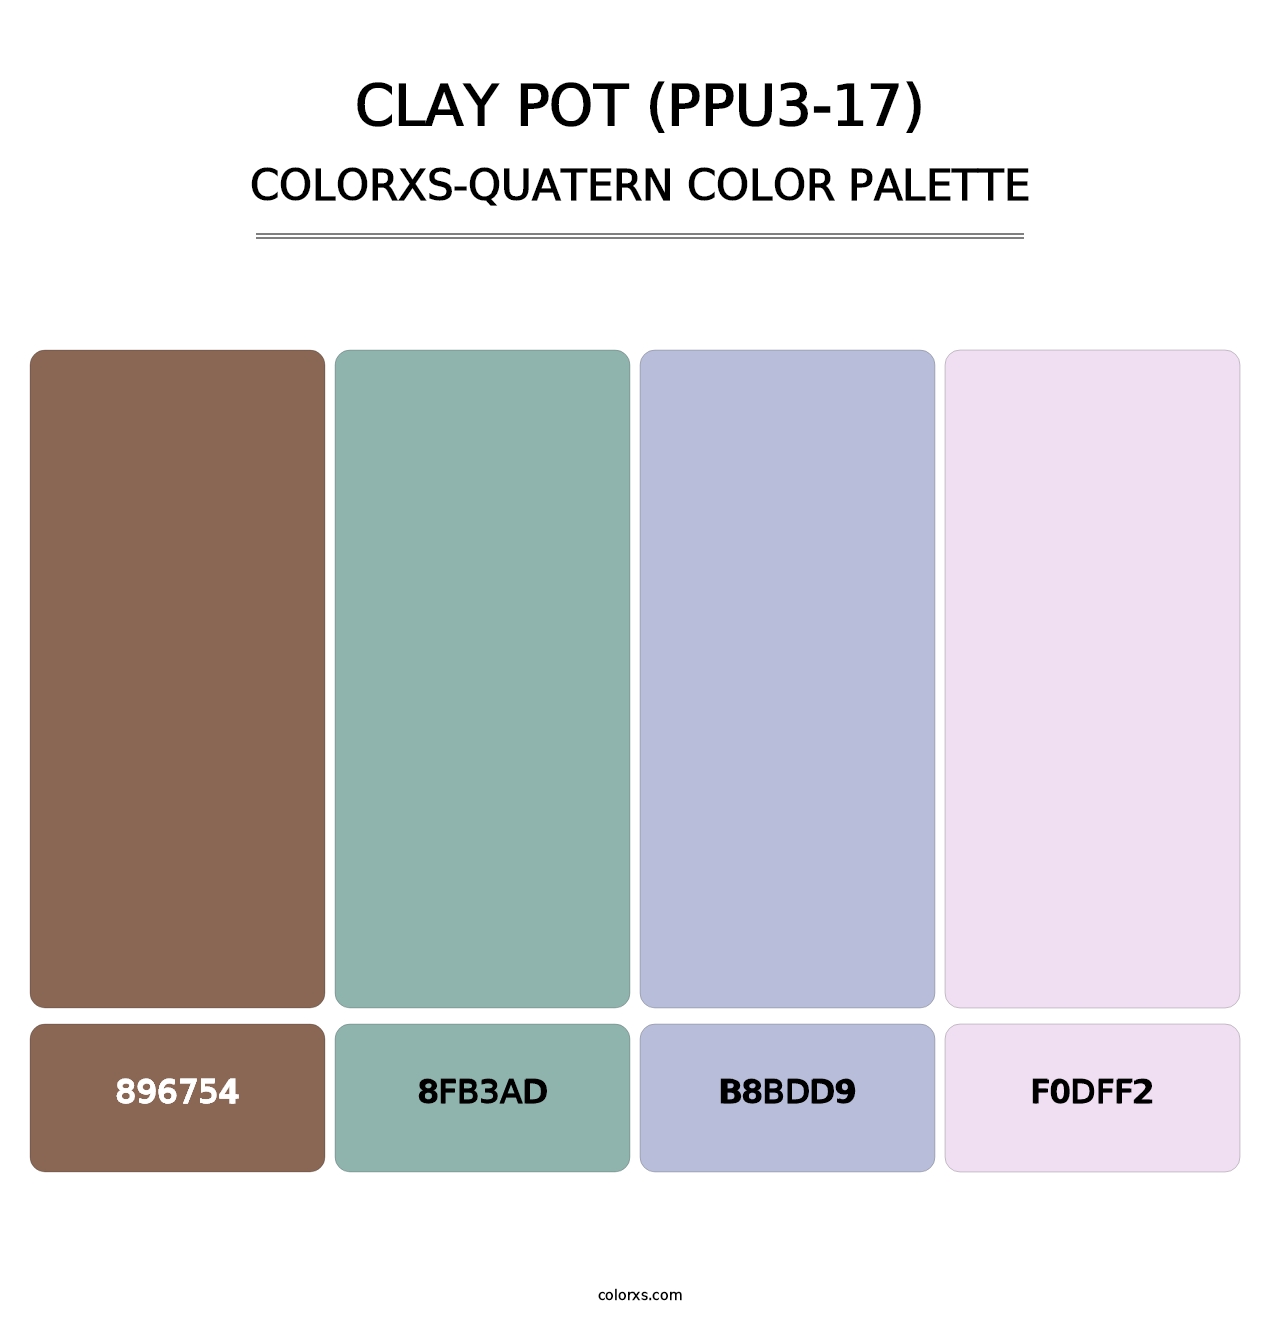 Clay Pot (PPU3-17) - Colorxs Quatern Palette